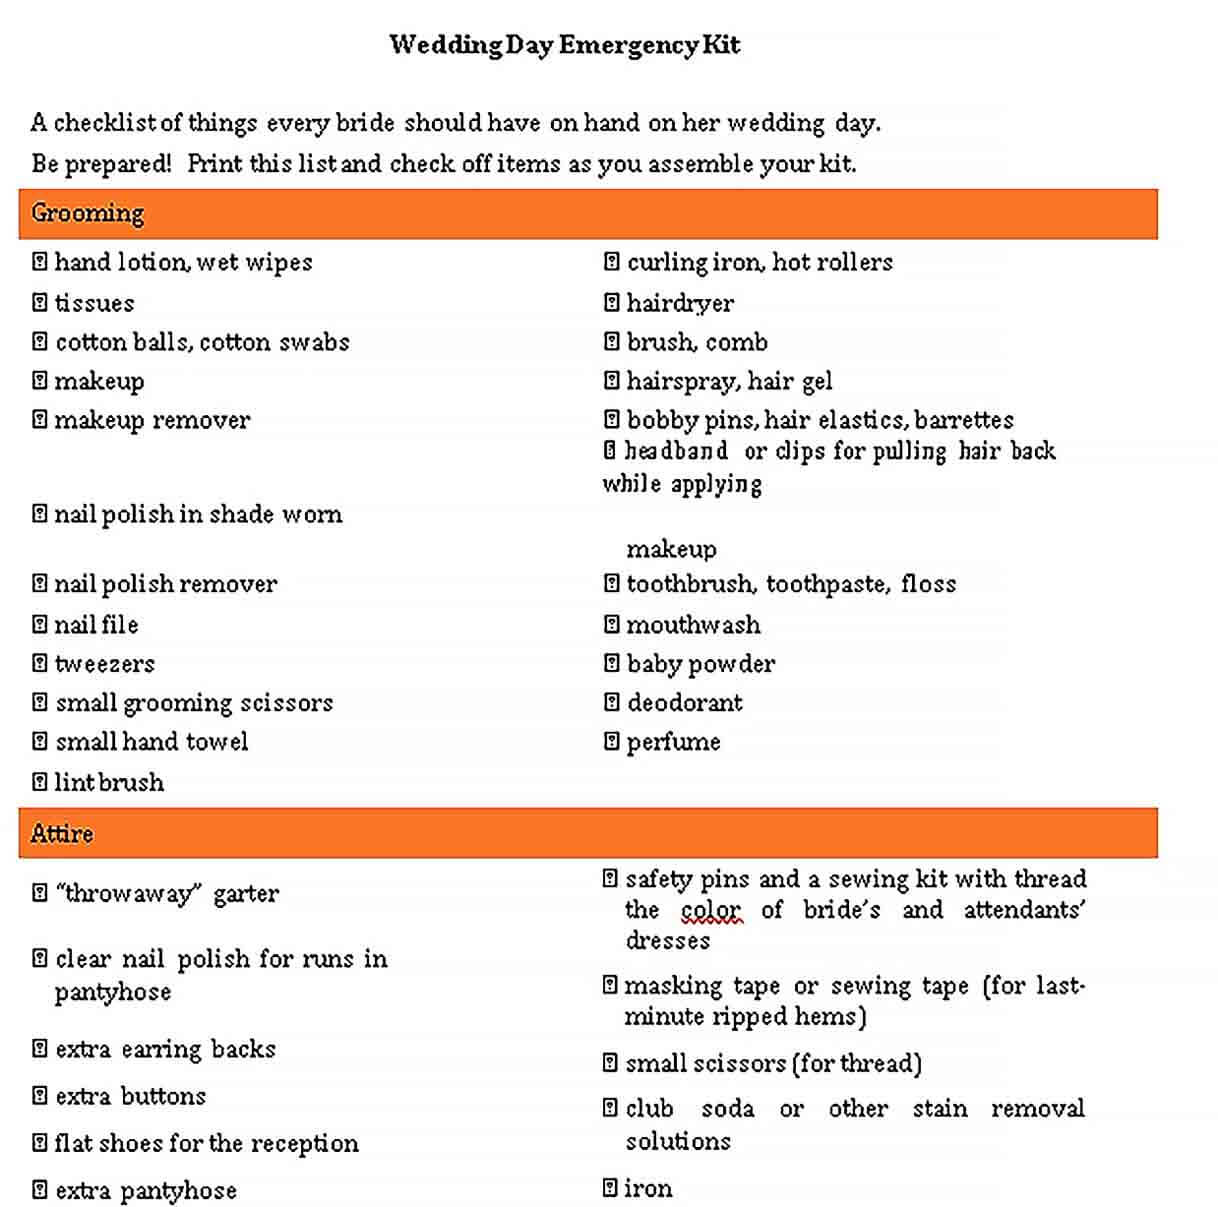 Sample Wedding Day Emergency Checklist